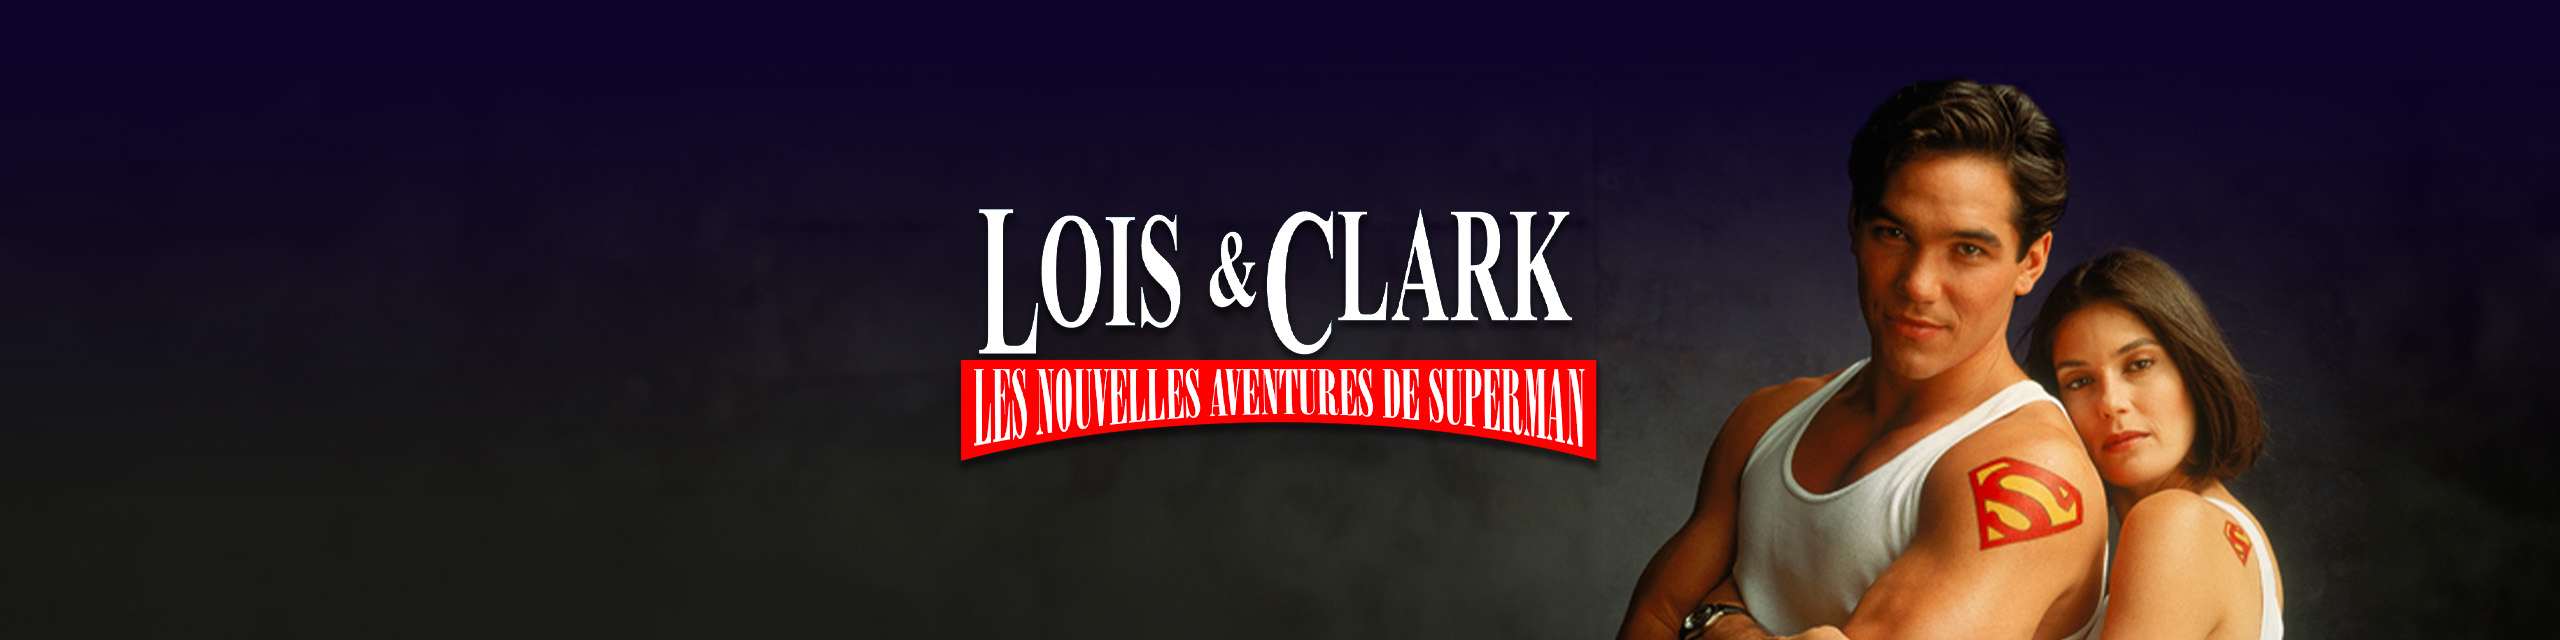 Lois et Clark 6play